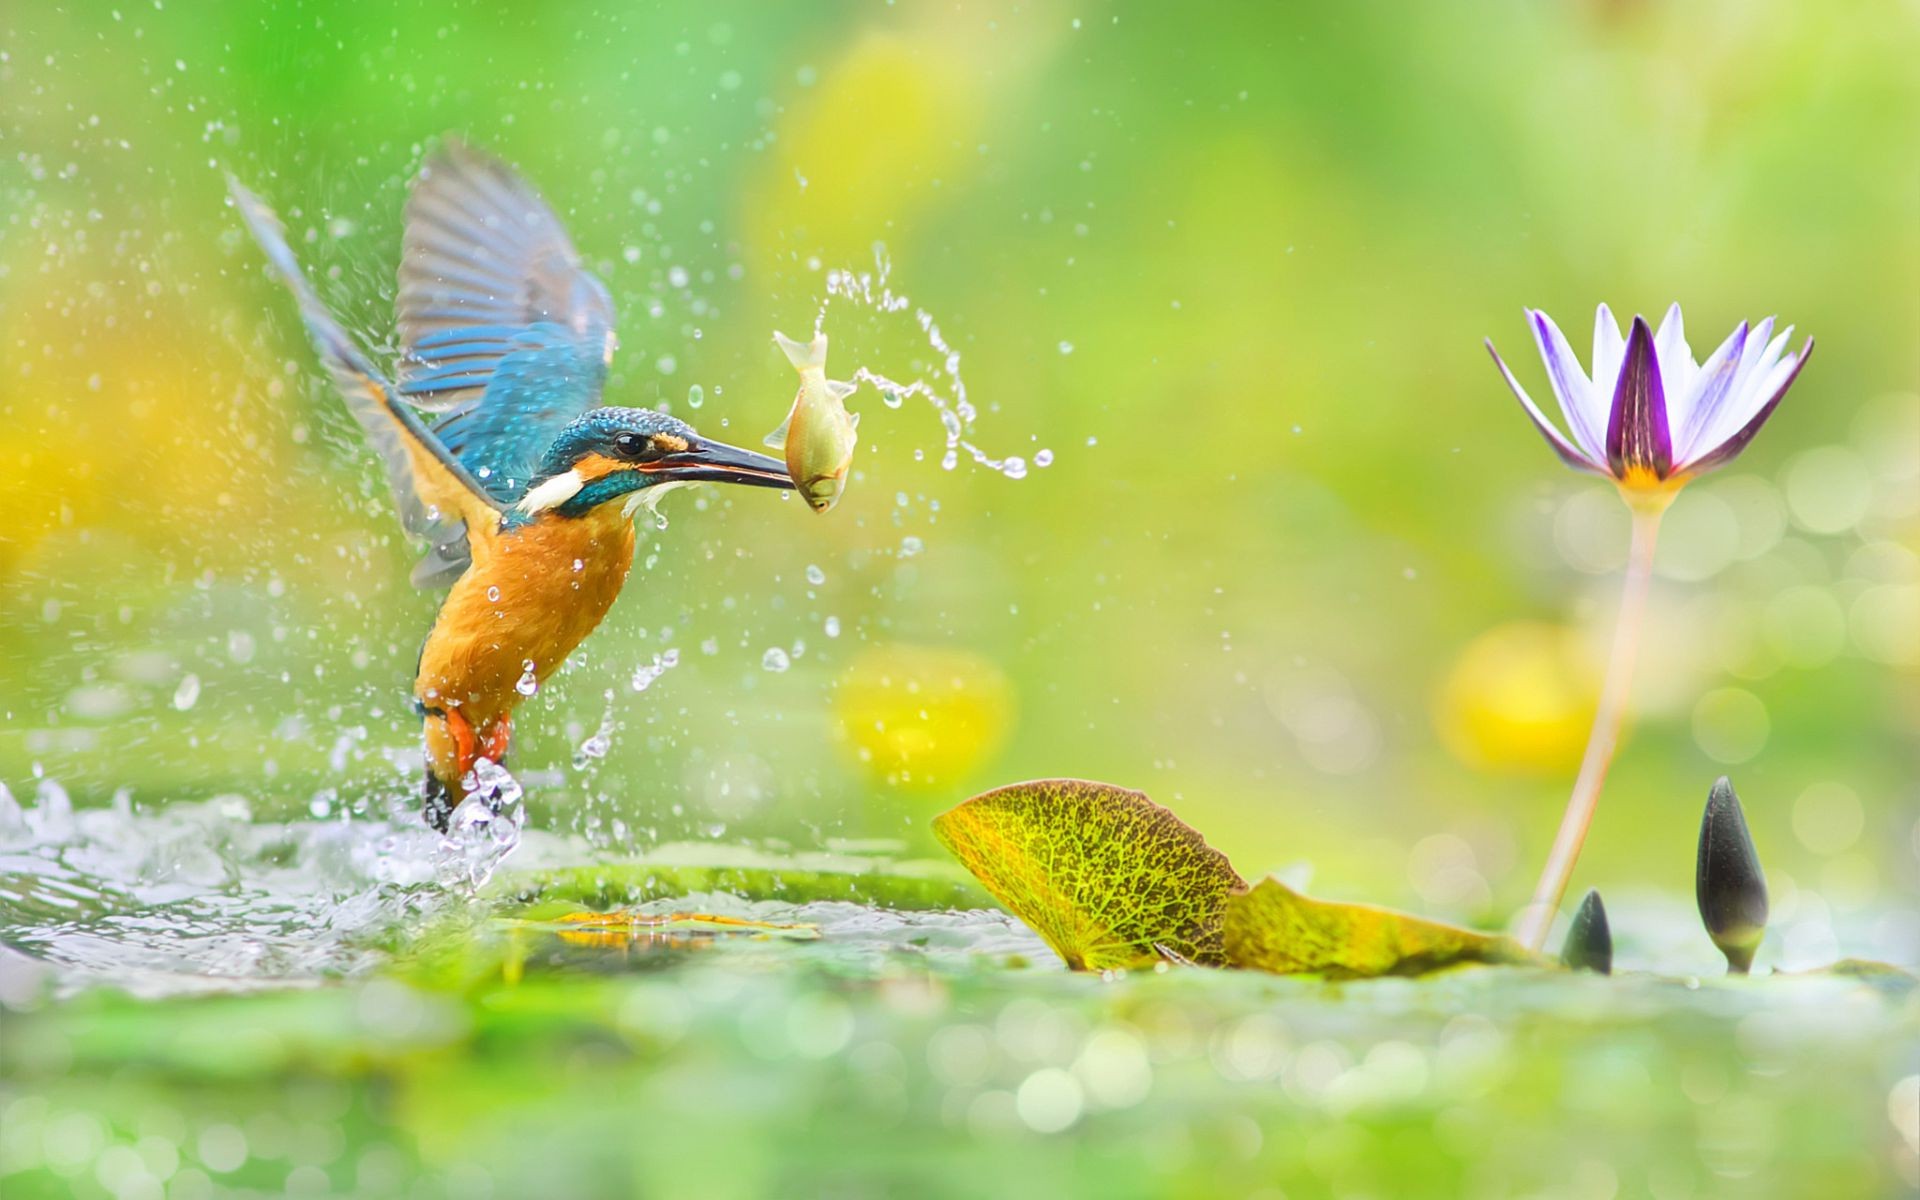 Птица ловит рыбу